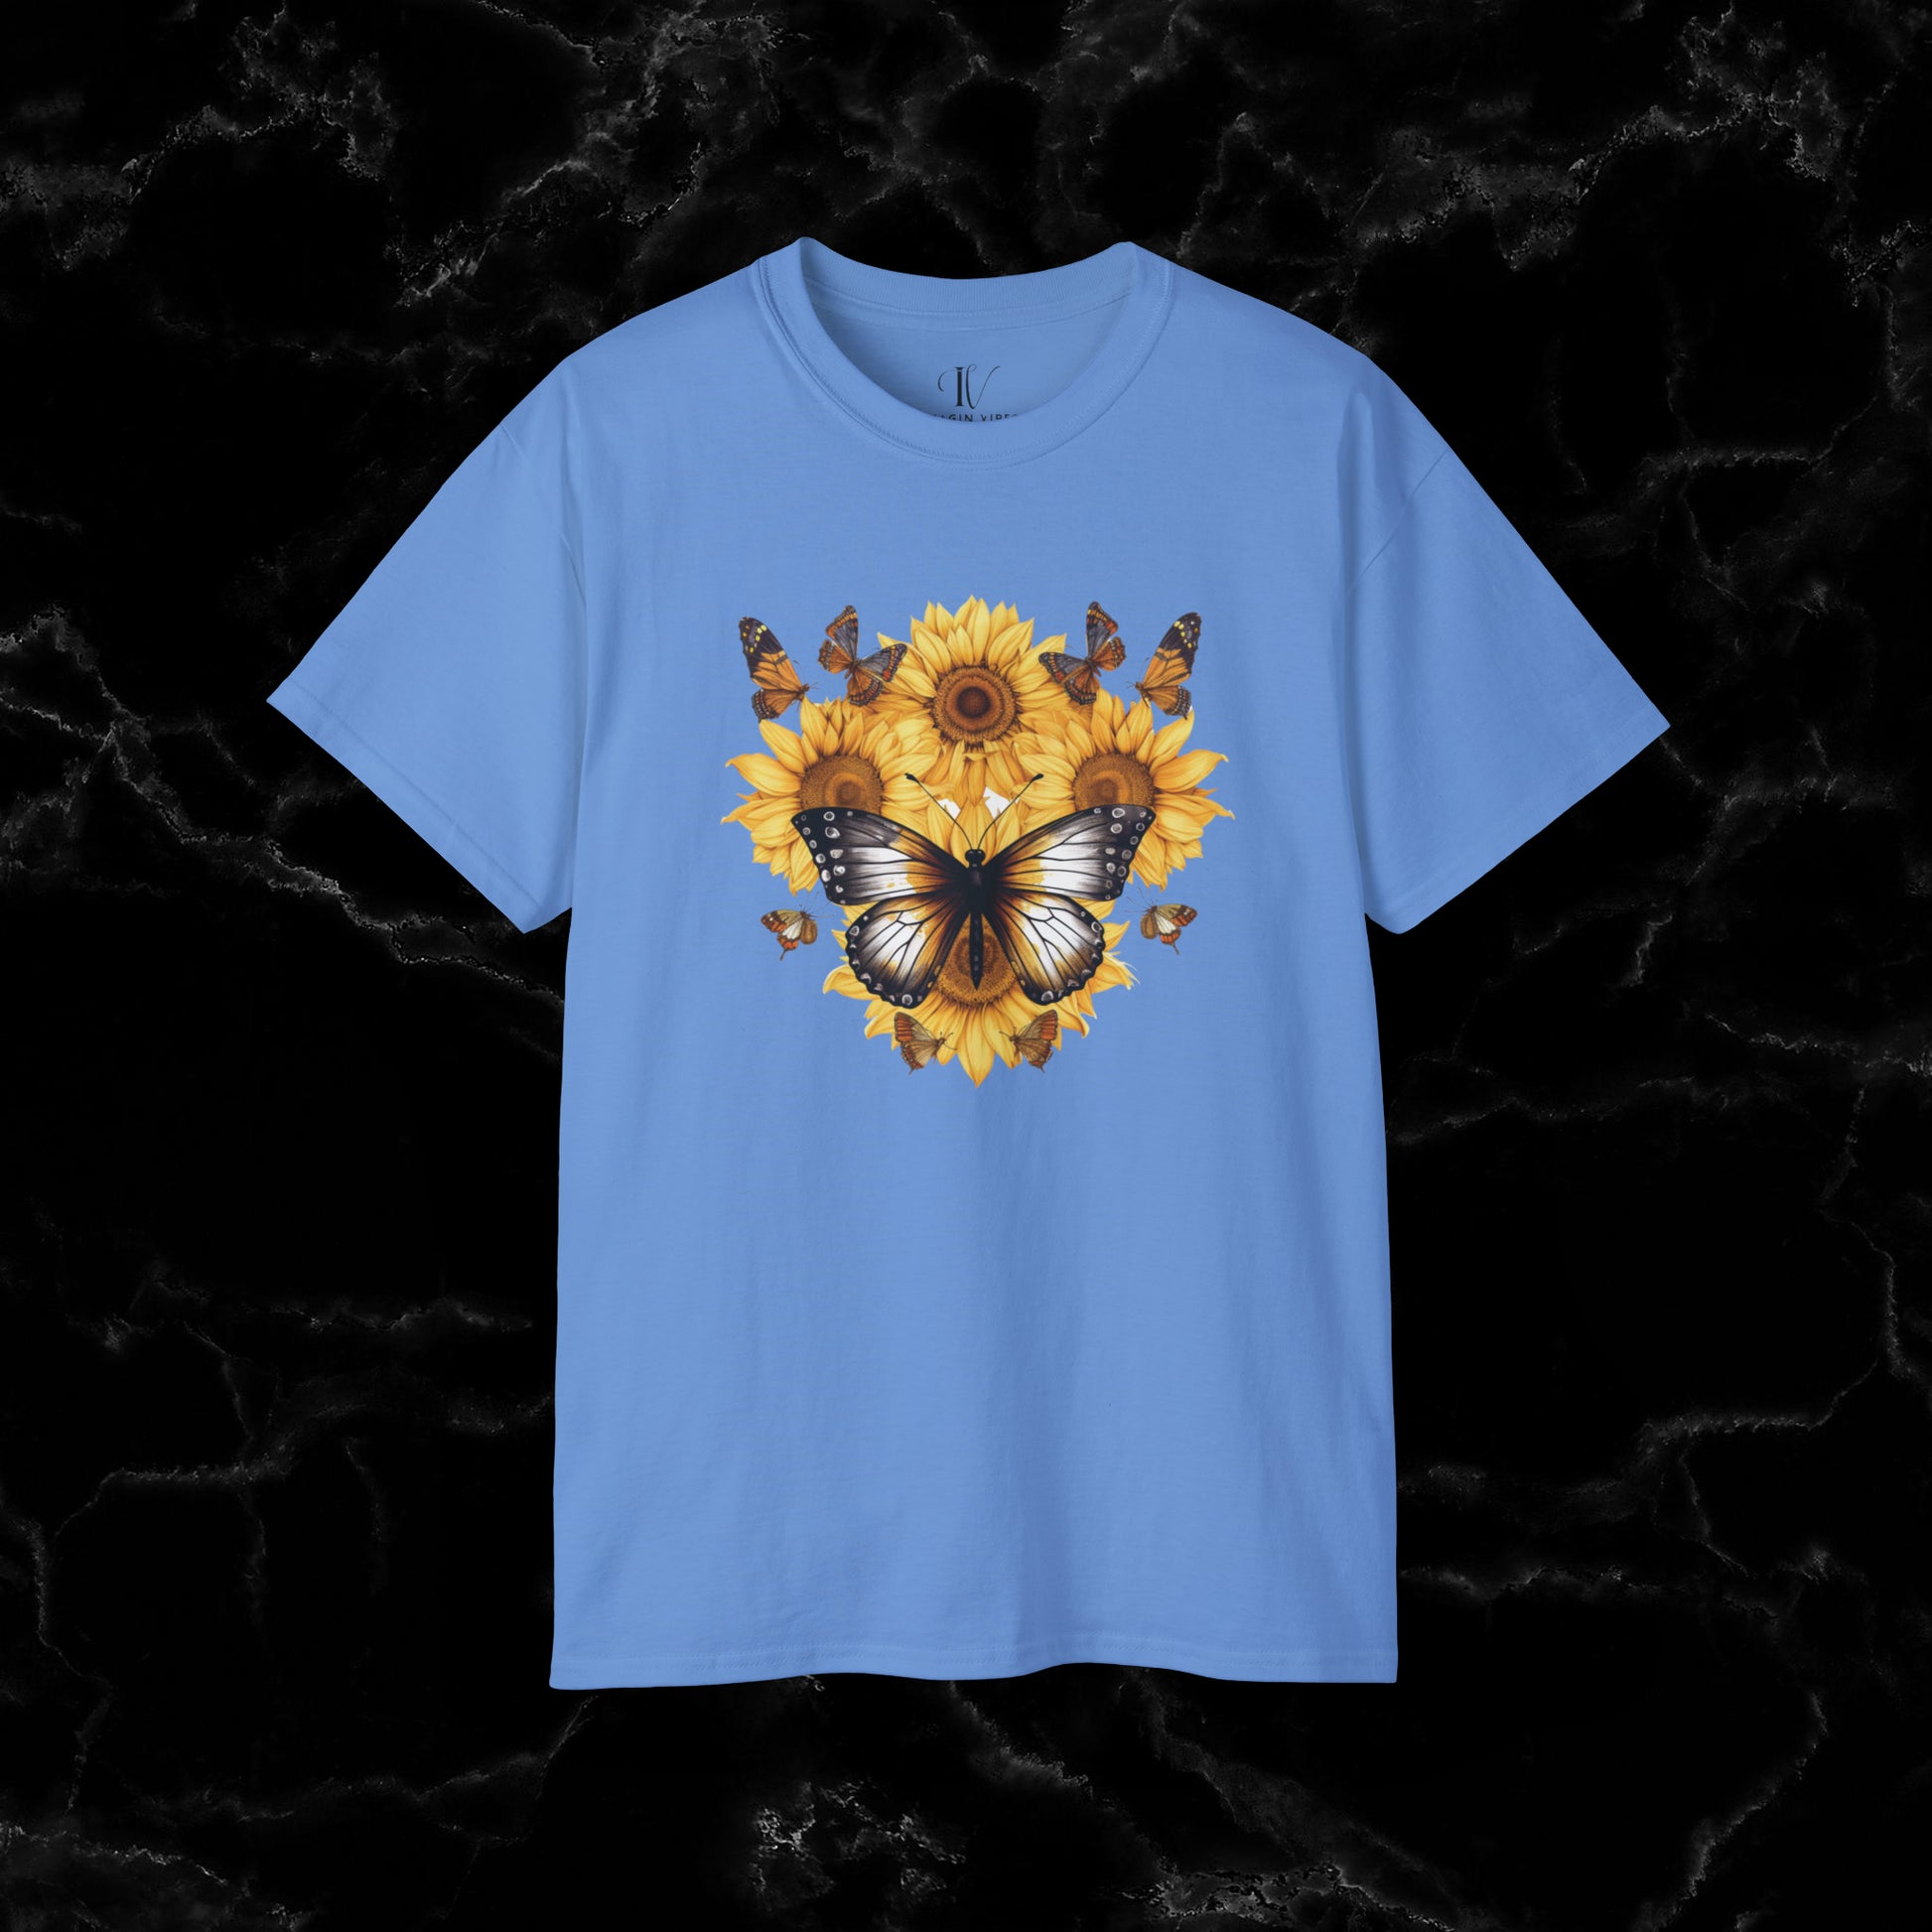 Sunflower Shirt - A Floral Tee, Garden Shirt, and Women's Fall Shirt with Nature-Inspired Design T-Shirt Carolina Blue S 